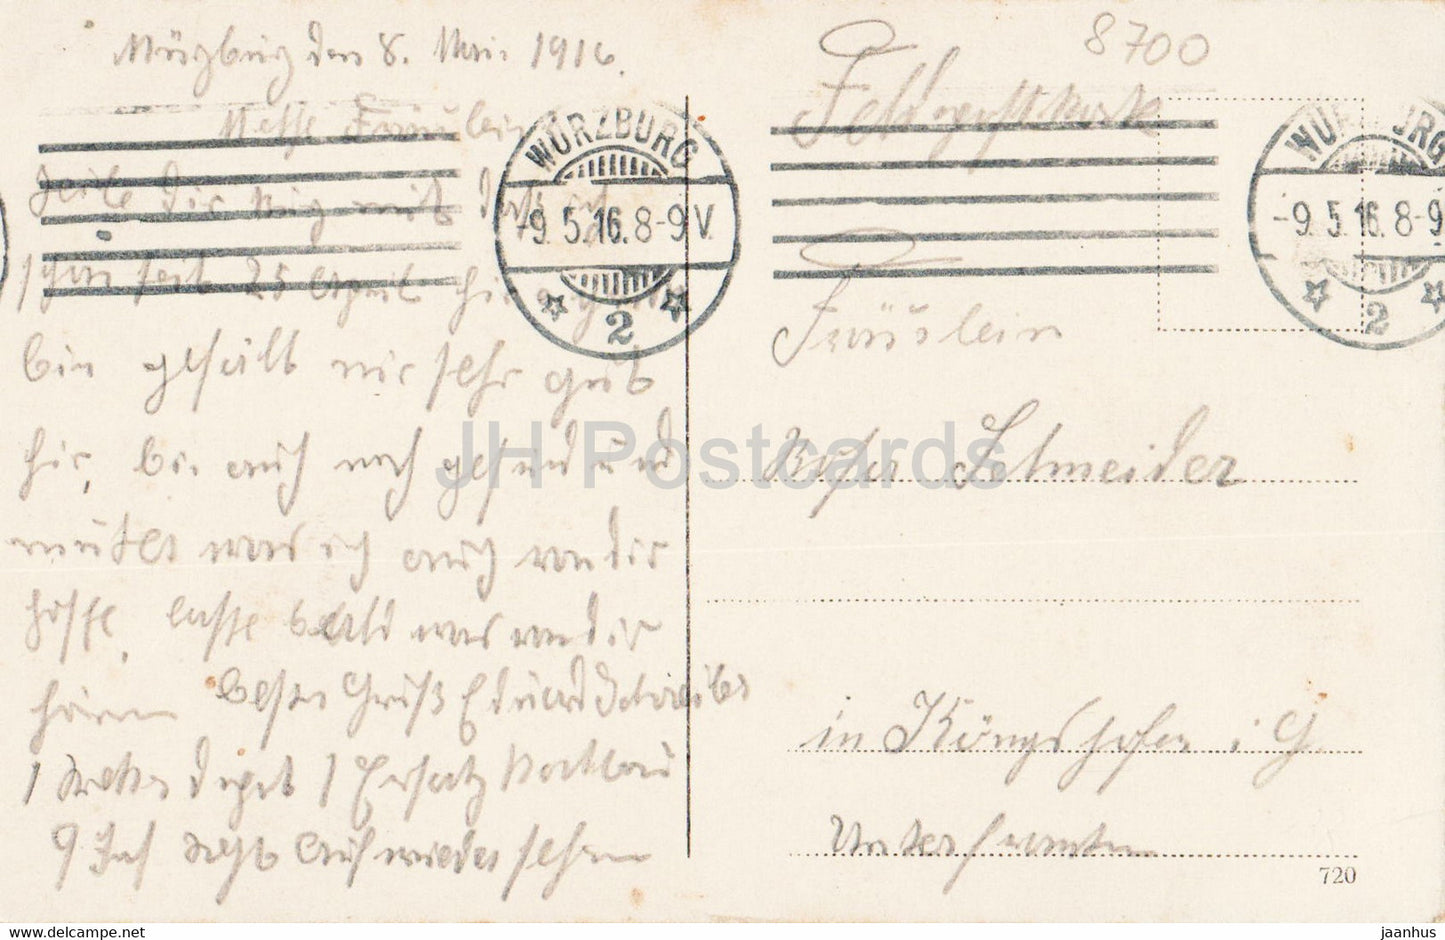 Würzburg - Alte Mainbrücke - Brücke - Feldpost - Militärpost - alte Postkarte - 1916 - Deutschland - gebraucht